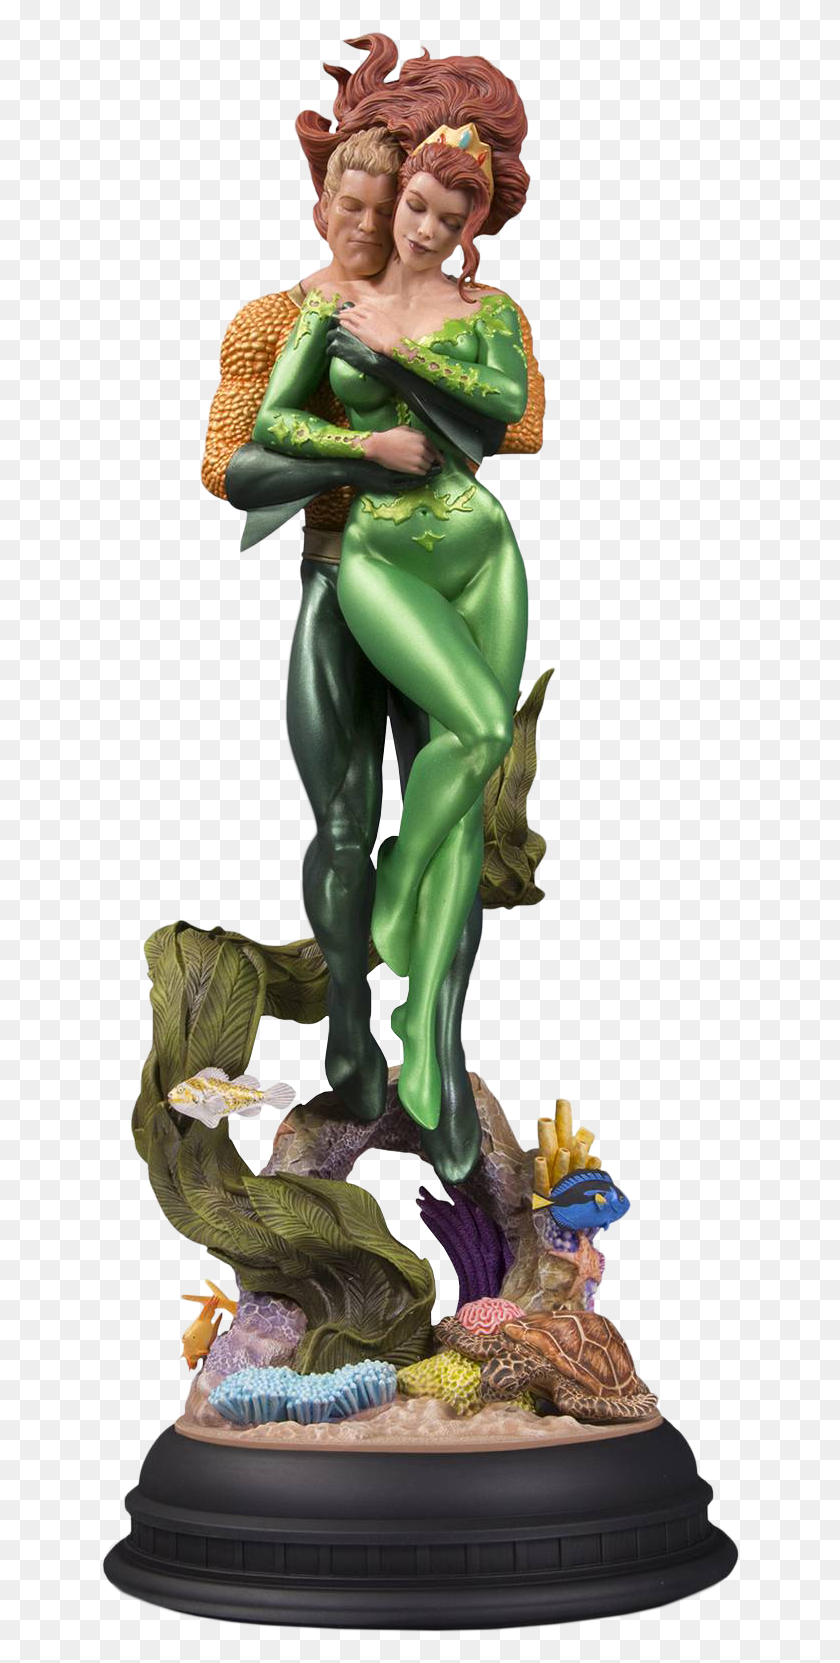 640x1603 Descargar Png Aquaman Amp Mera Aquaman And Mera Estatua, Figurilla, Persona, Humano Hd Png